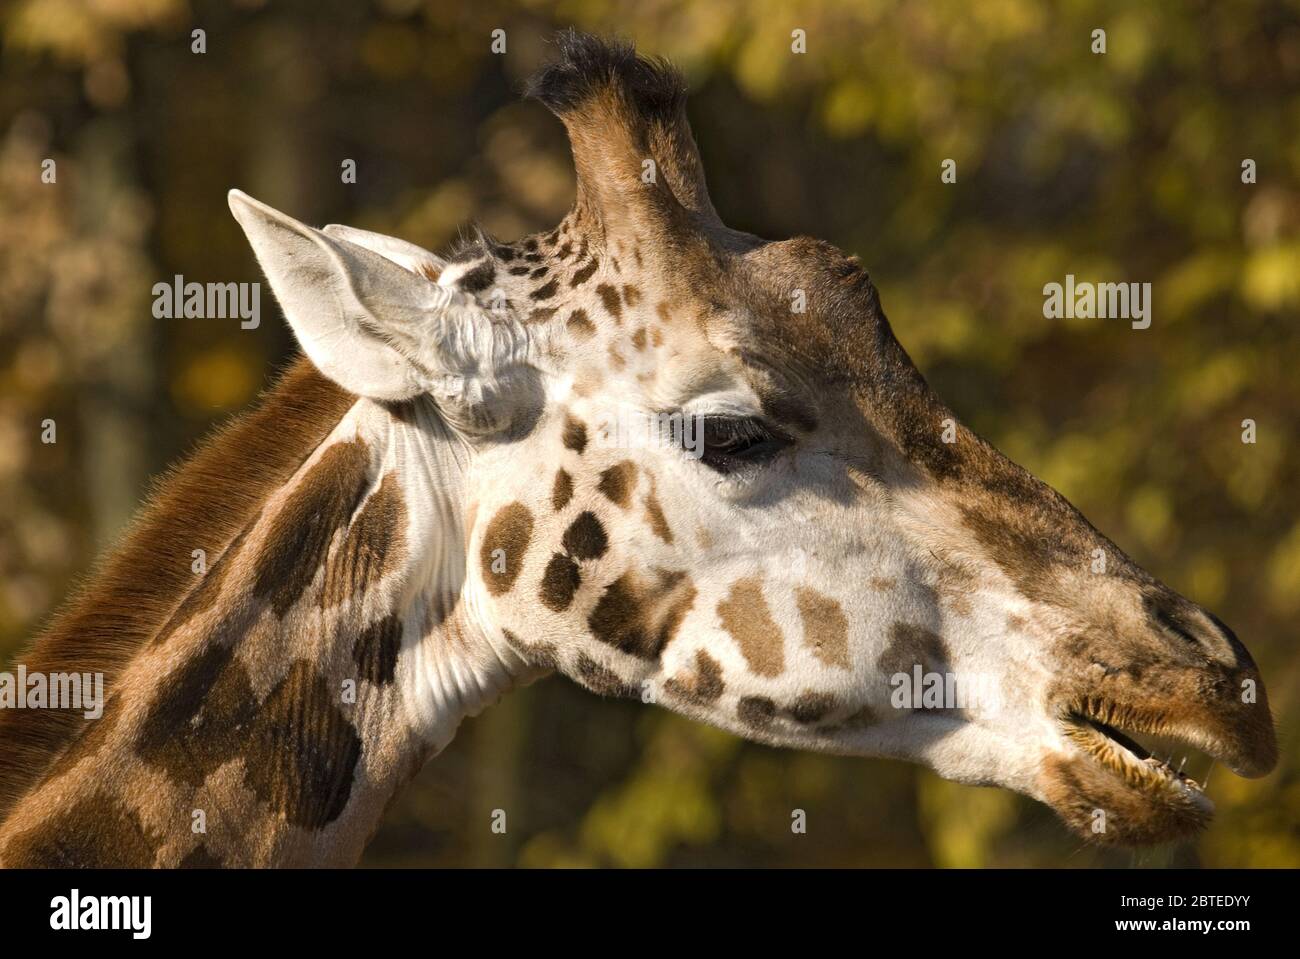 Giraffe - Giraffa camelopardalis, Potrait von Giraffen, Safari in Kenia, Afrika, nettes Mitglied der afrikanischen Big Five Säugetiere. Stockfoto